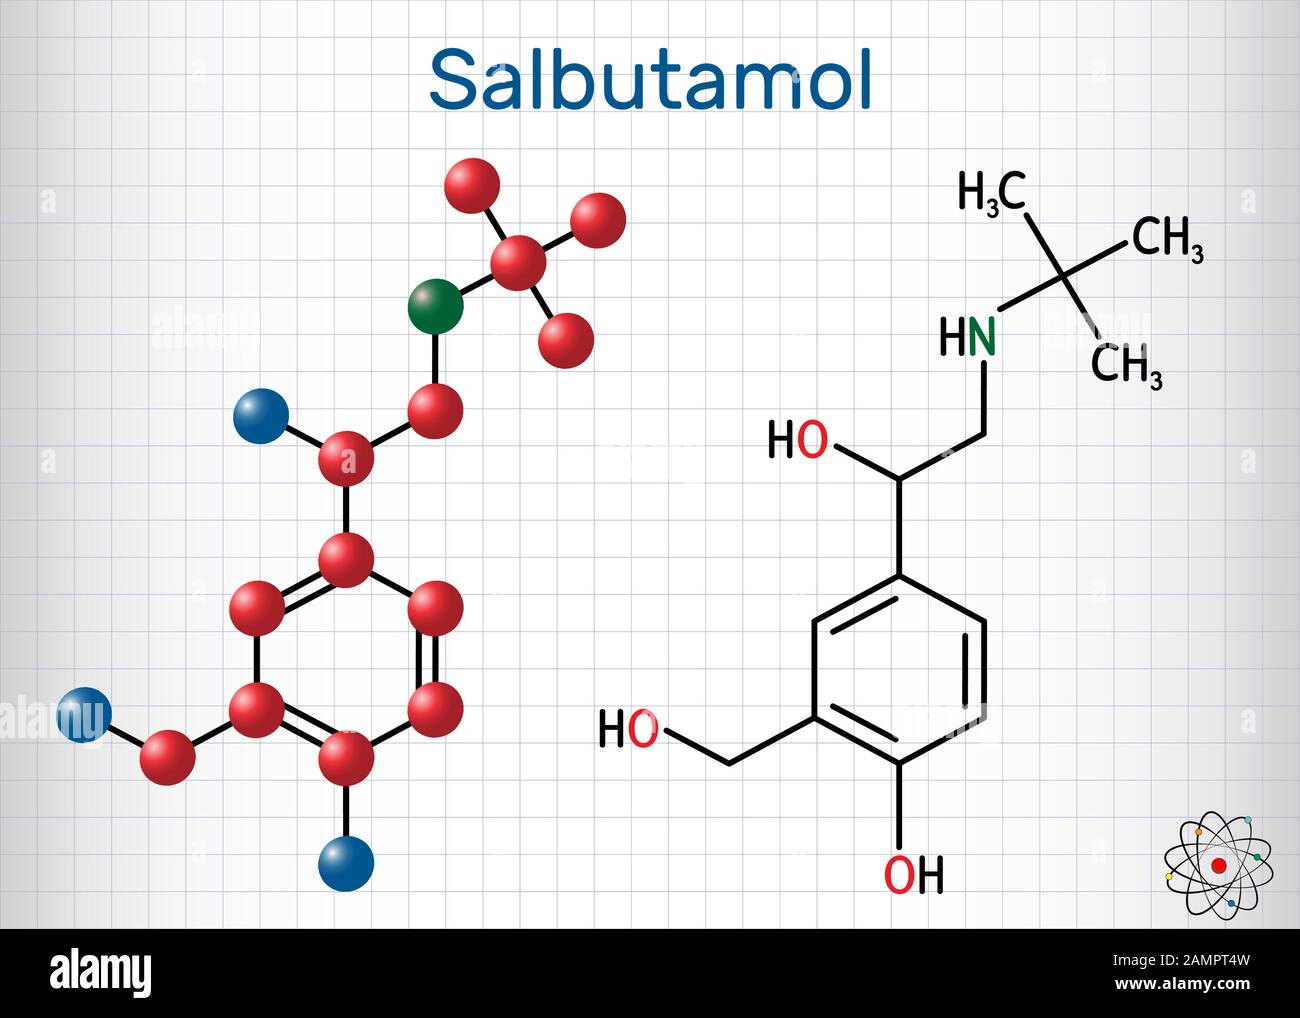 Salbutamol, Albumterol-Molekül. Es ist ein kurzwirkender Agonist, der bei der Behandlung von Asthma und COPD eingesetzt wird. Strukturelle chemische Formel und Molekularmodell. Stock Vektor